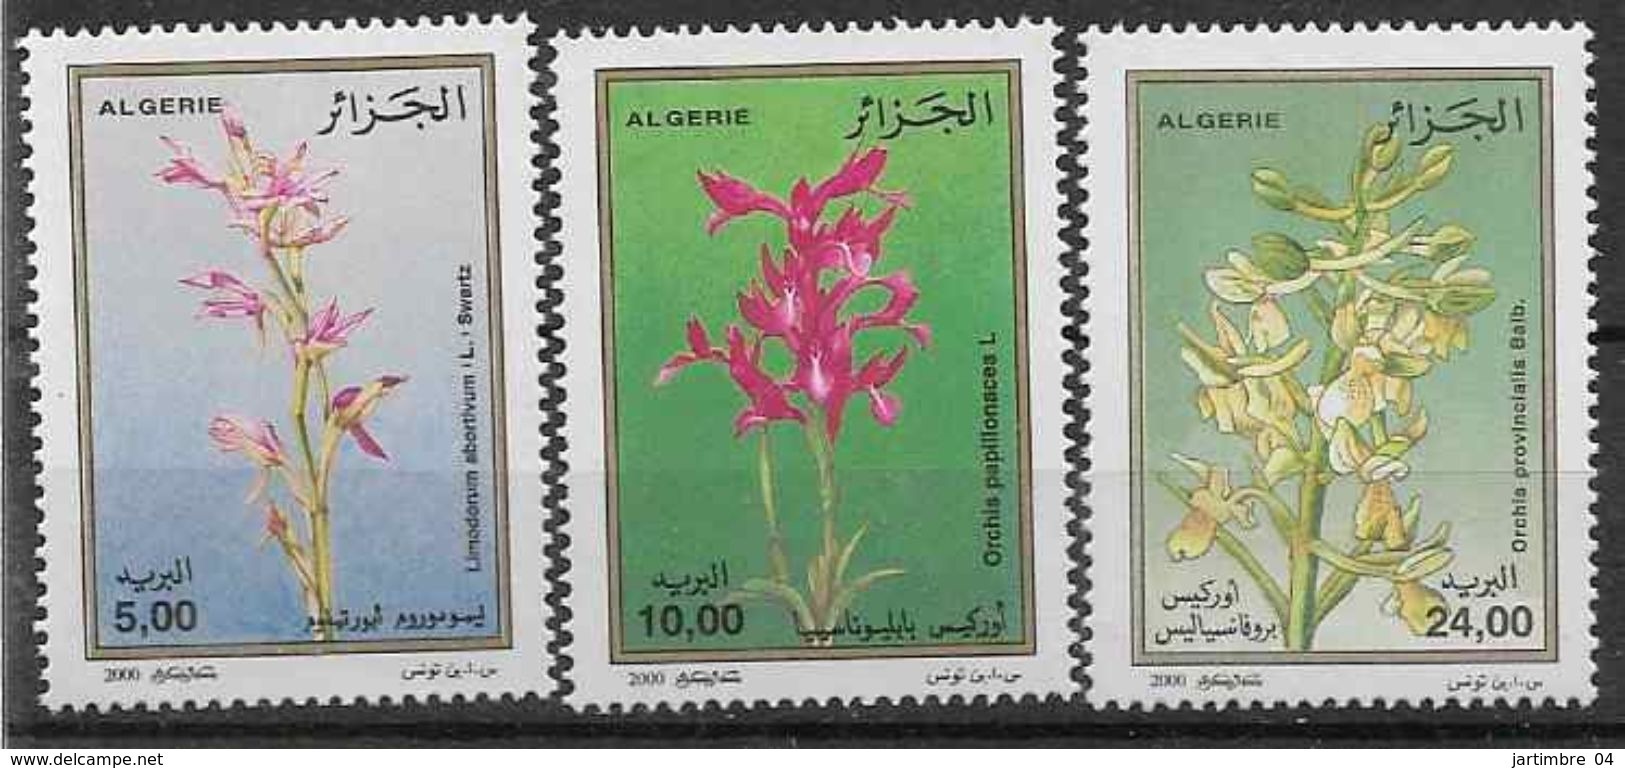 2000 ALGERIE 1266-68** Fleurs, Orchidées - Algérie (1962-...)